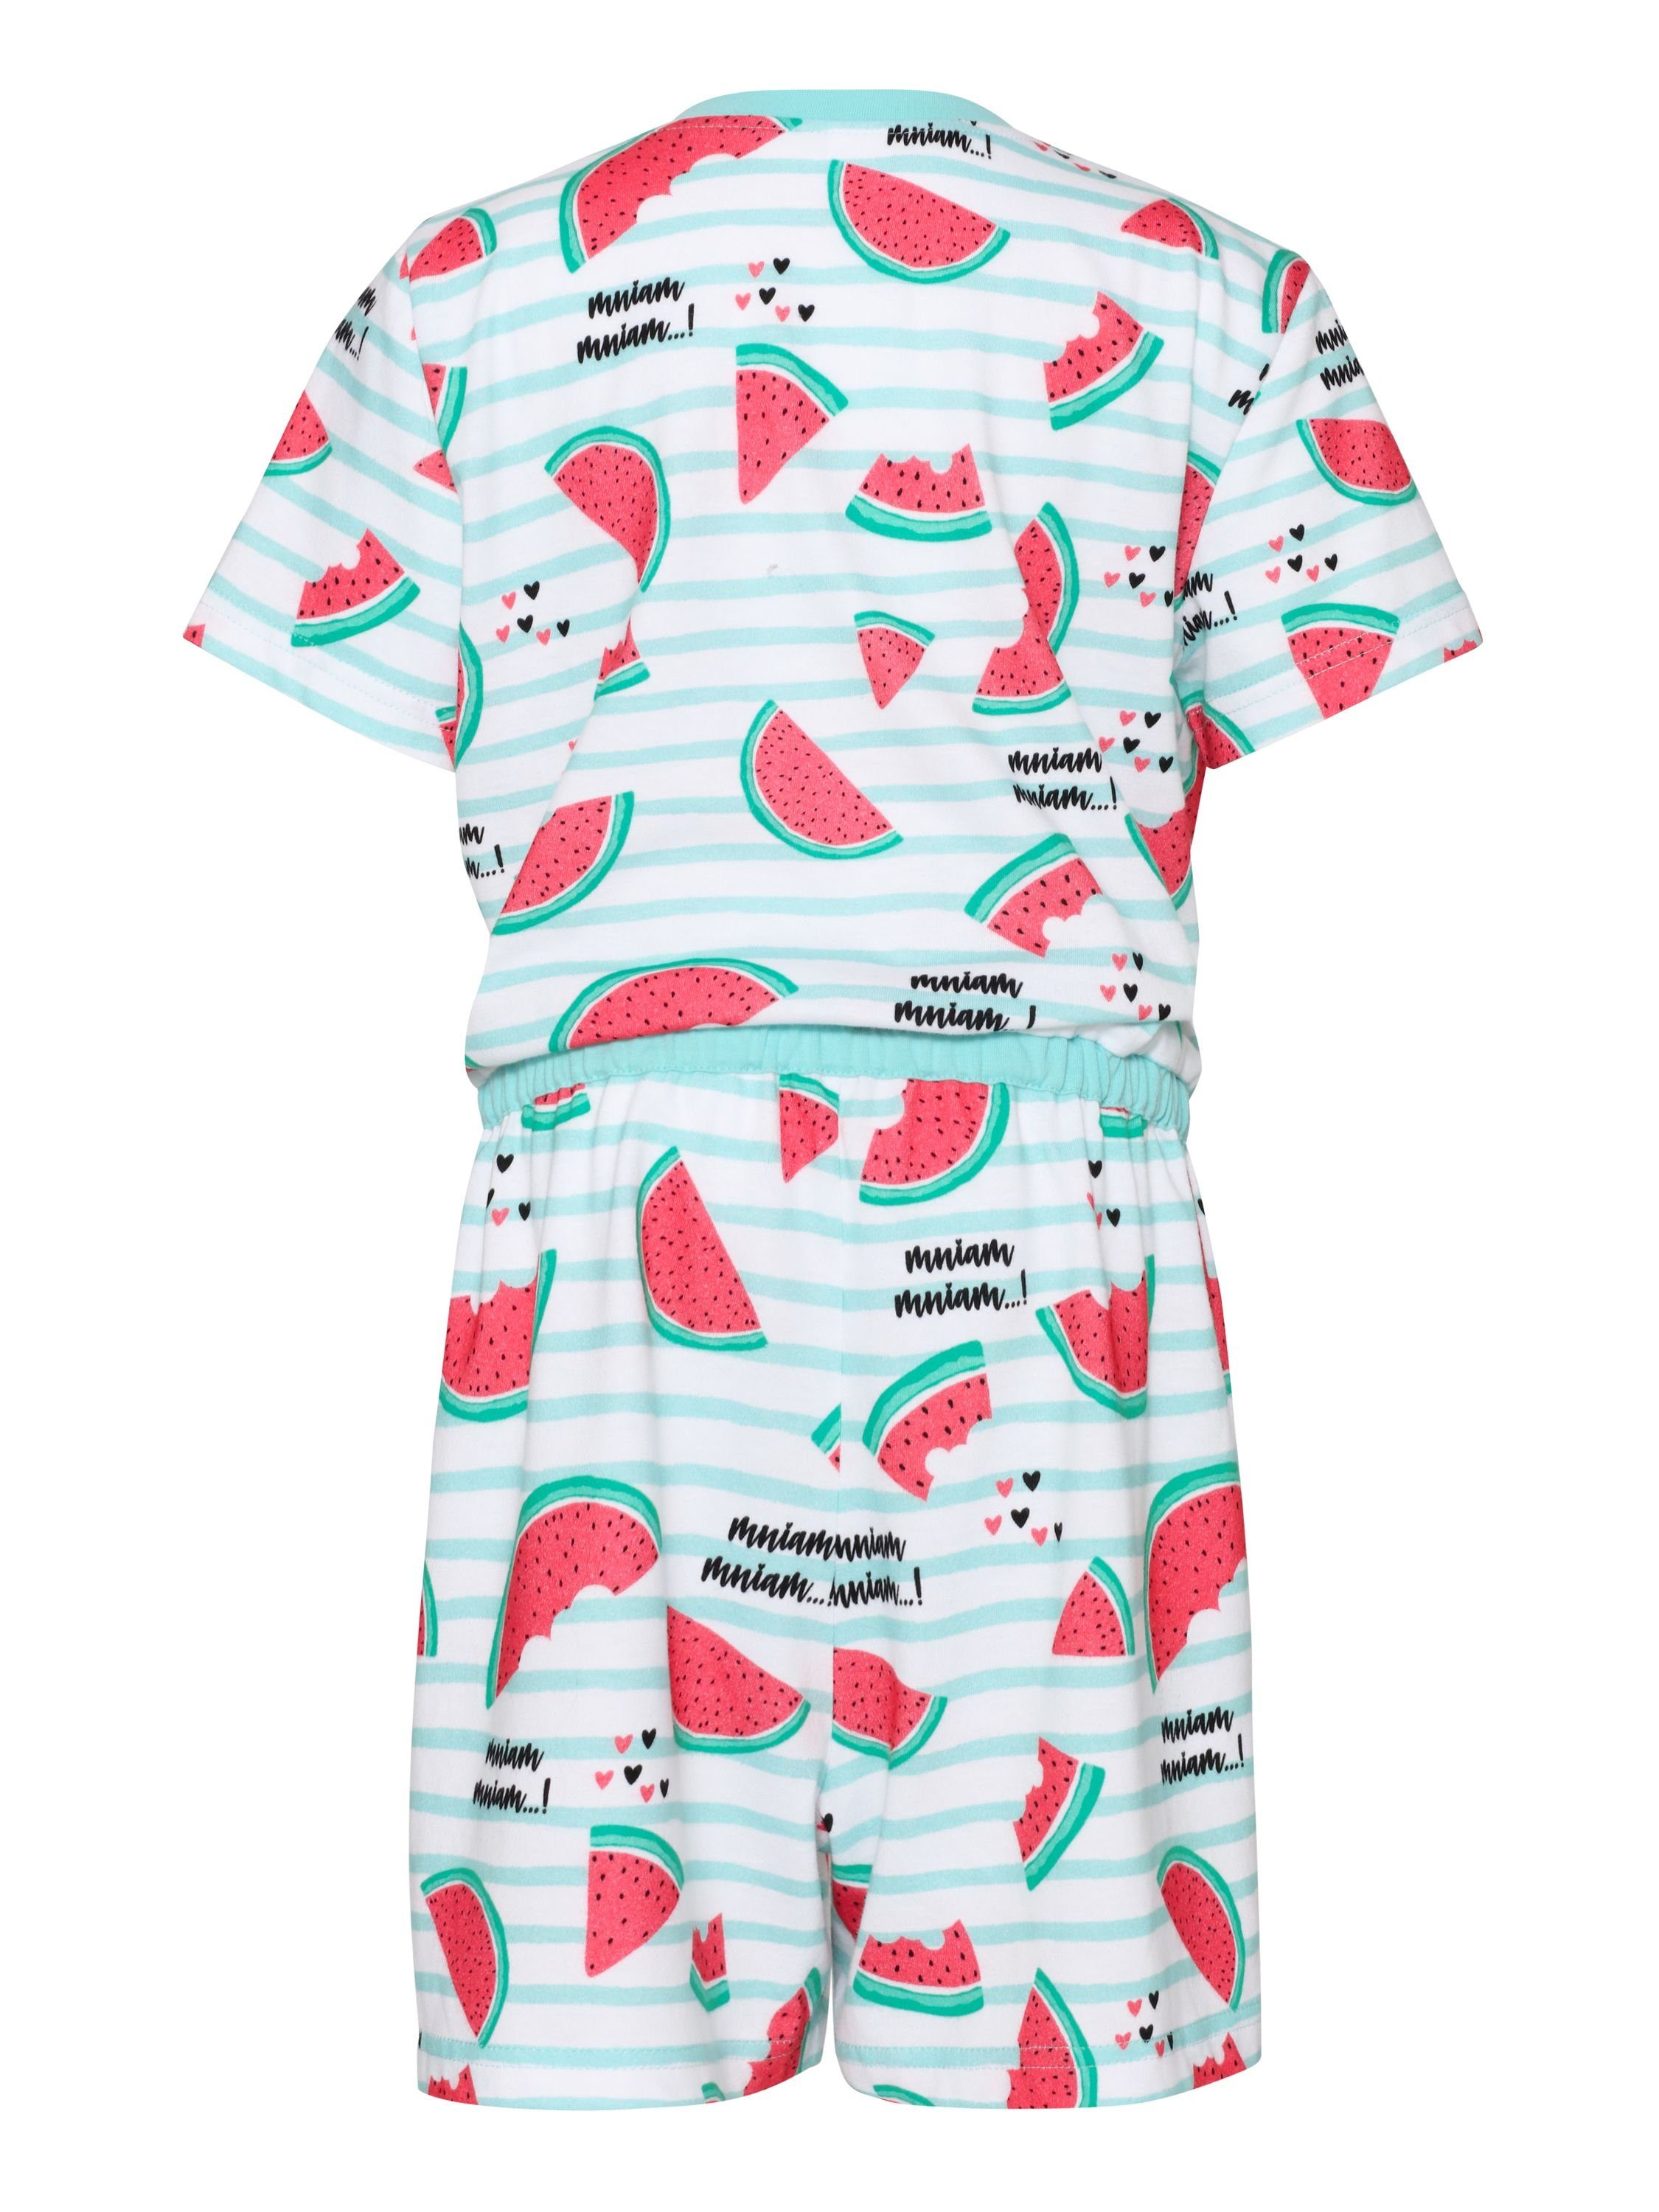 MS10-267 Schlafanzug Overall Wassermelone Merry Schlafanzug Style Short Mädchen